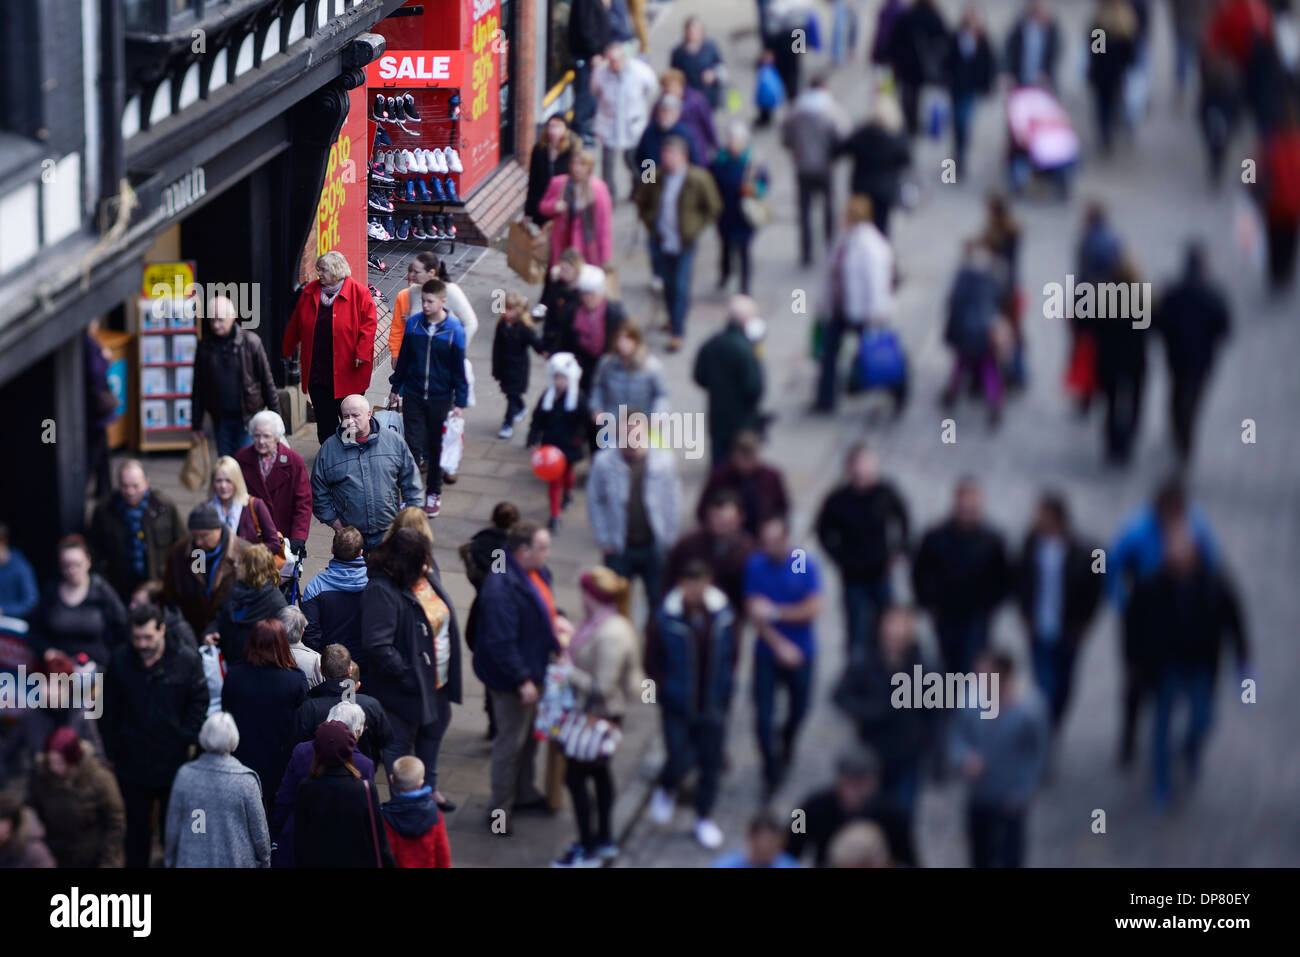 La Foule de visiteurs de centre-ville de Chester photographiés avec un tilt shift lens Banque D'Images